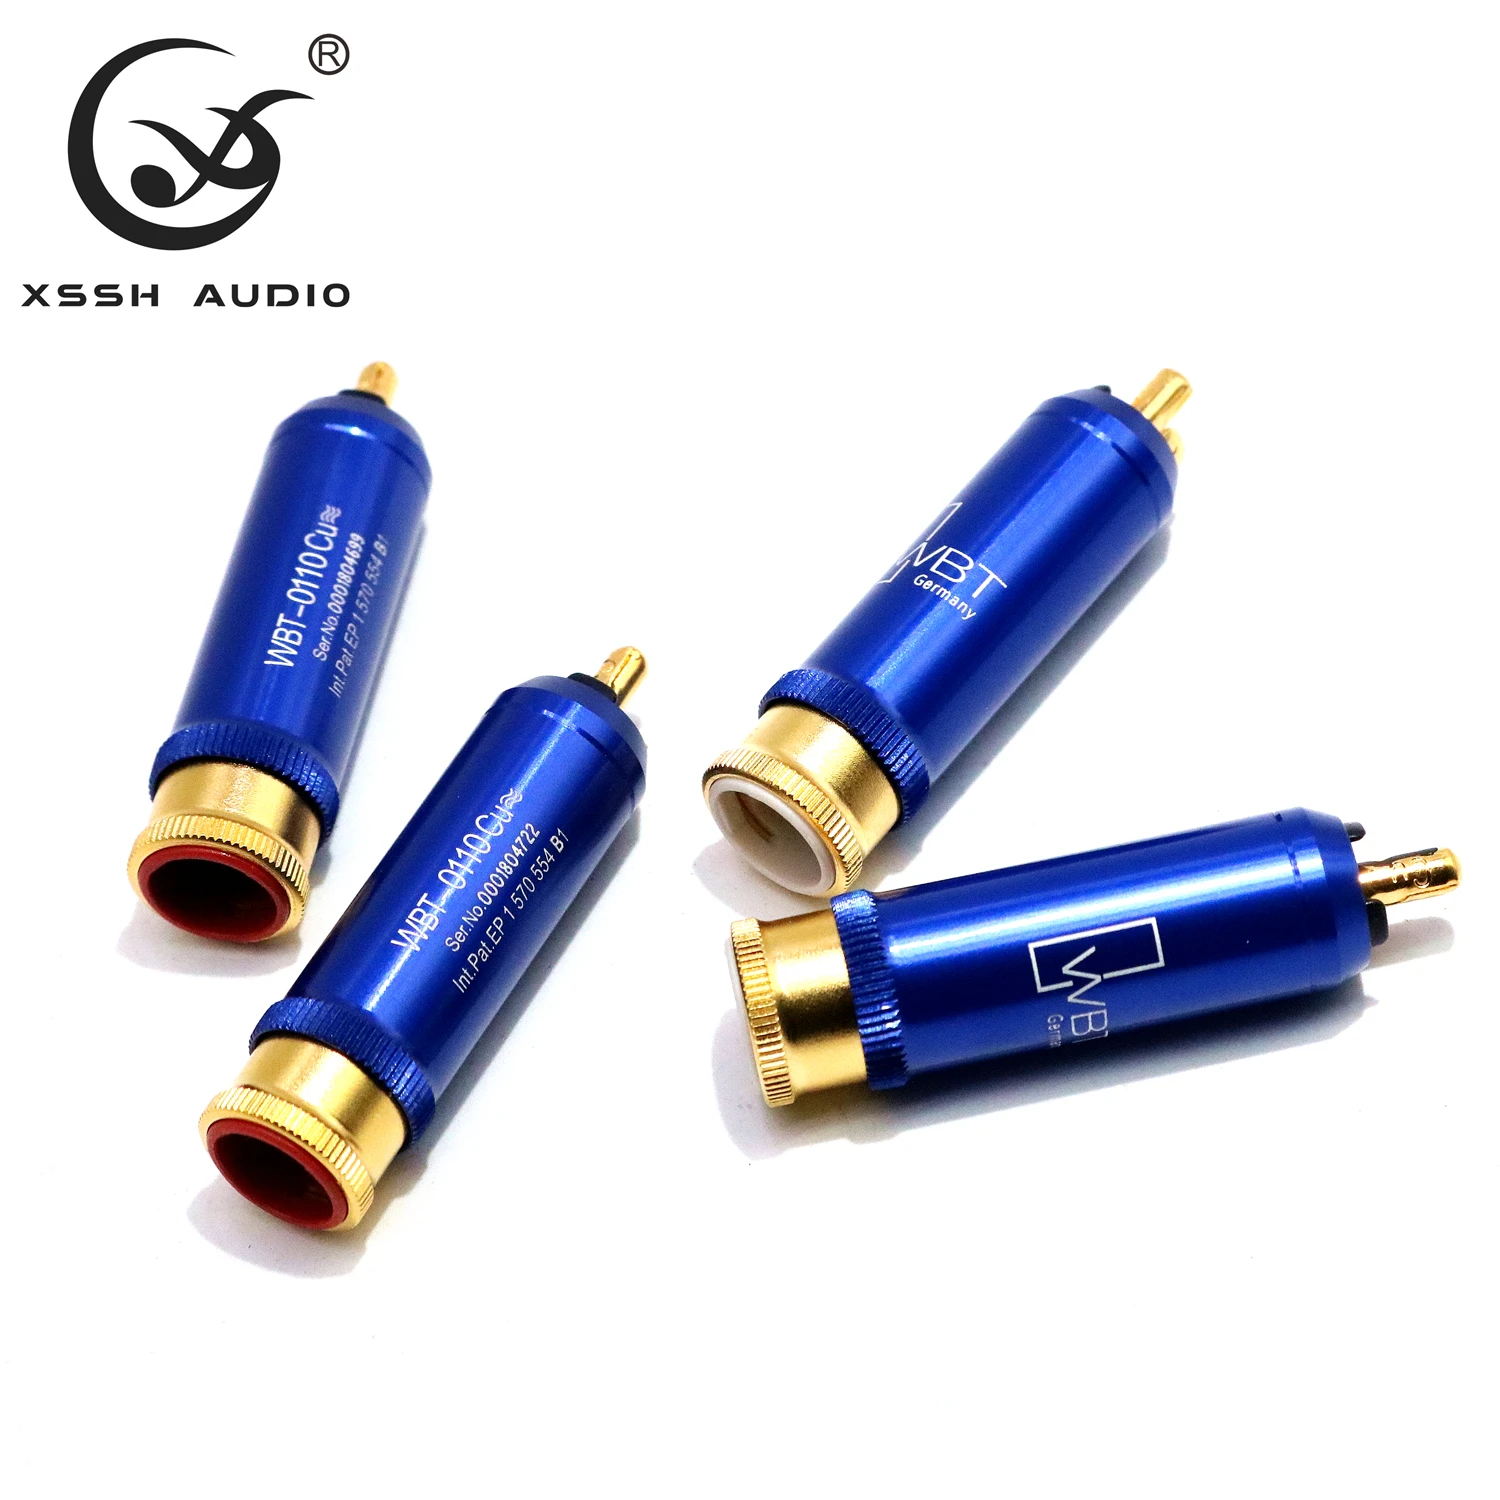 XSSH аудио 4 шт. WBT-0110Cu nextgen signature RCA набор из 4 шт. медный высококачественный разъем штекер